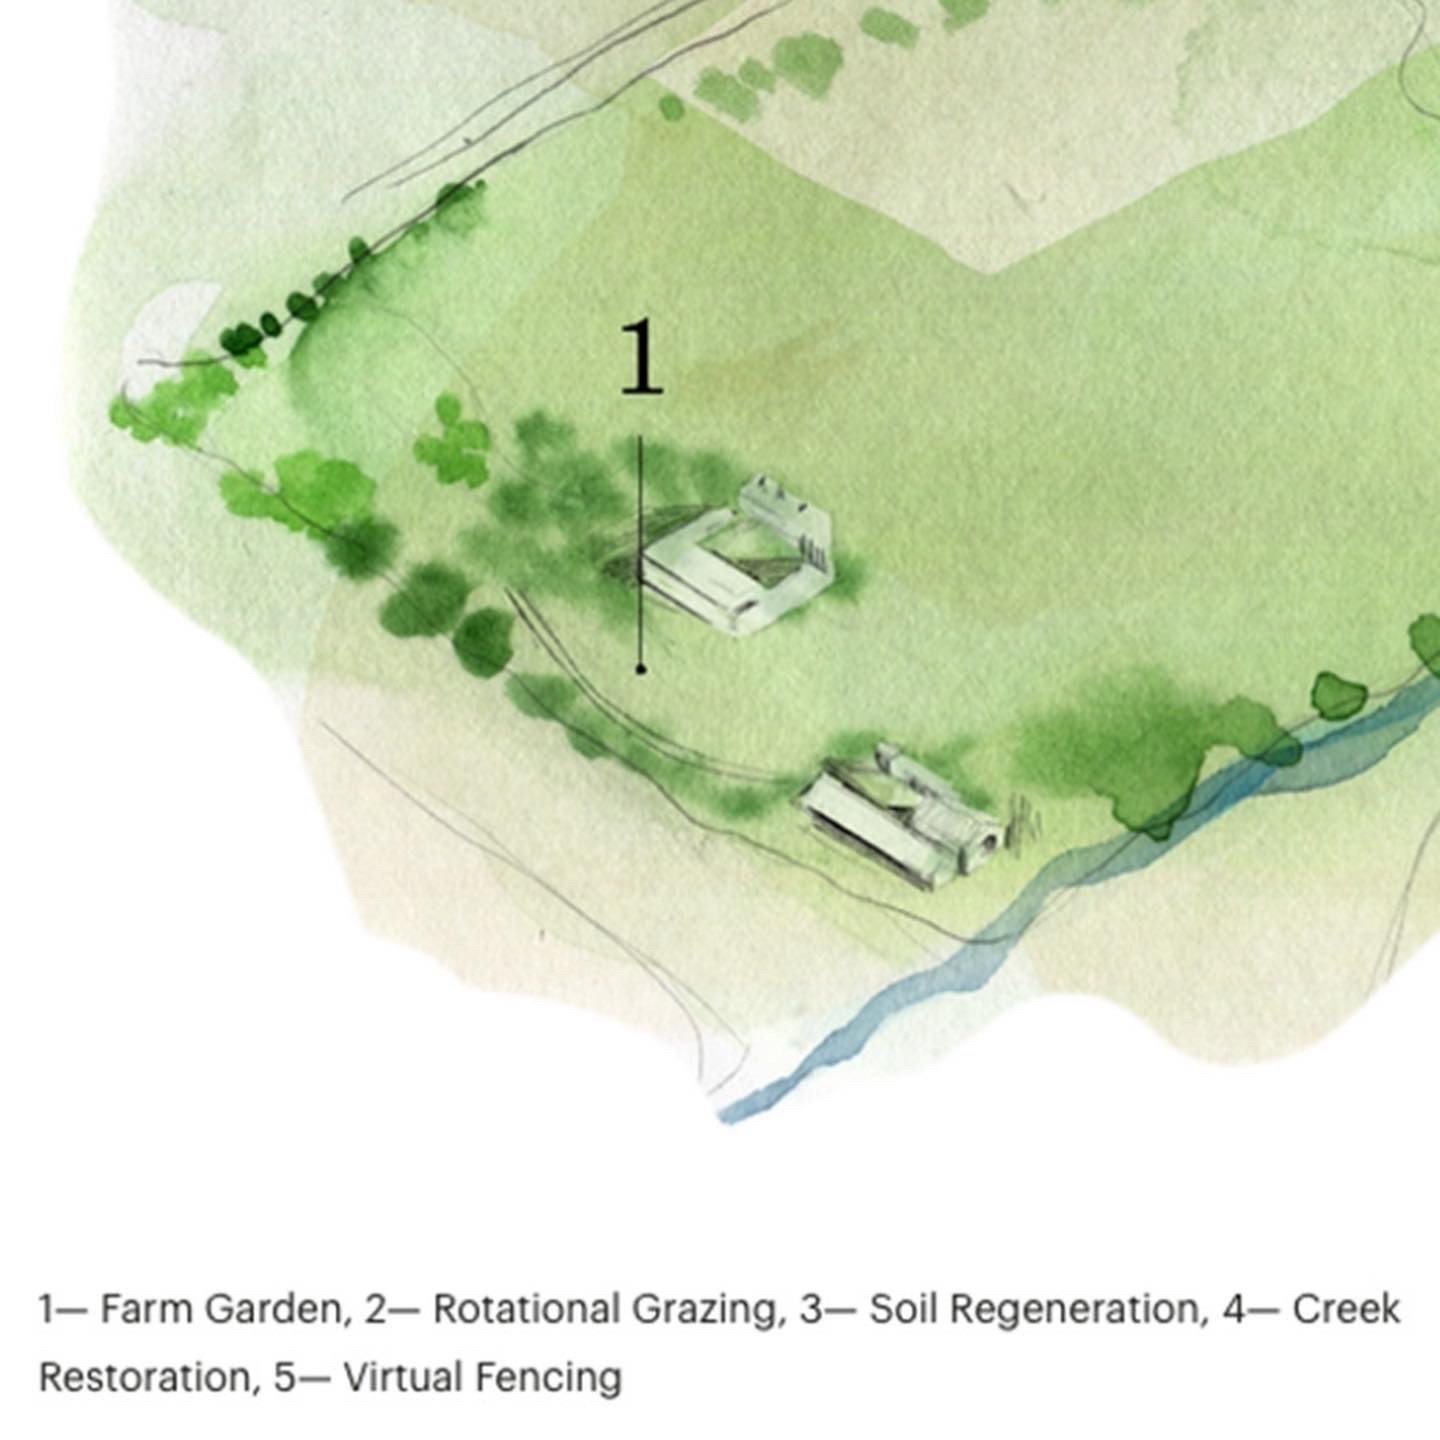 Eames Farm Garden Illustration